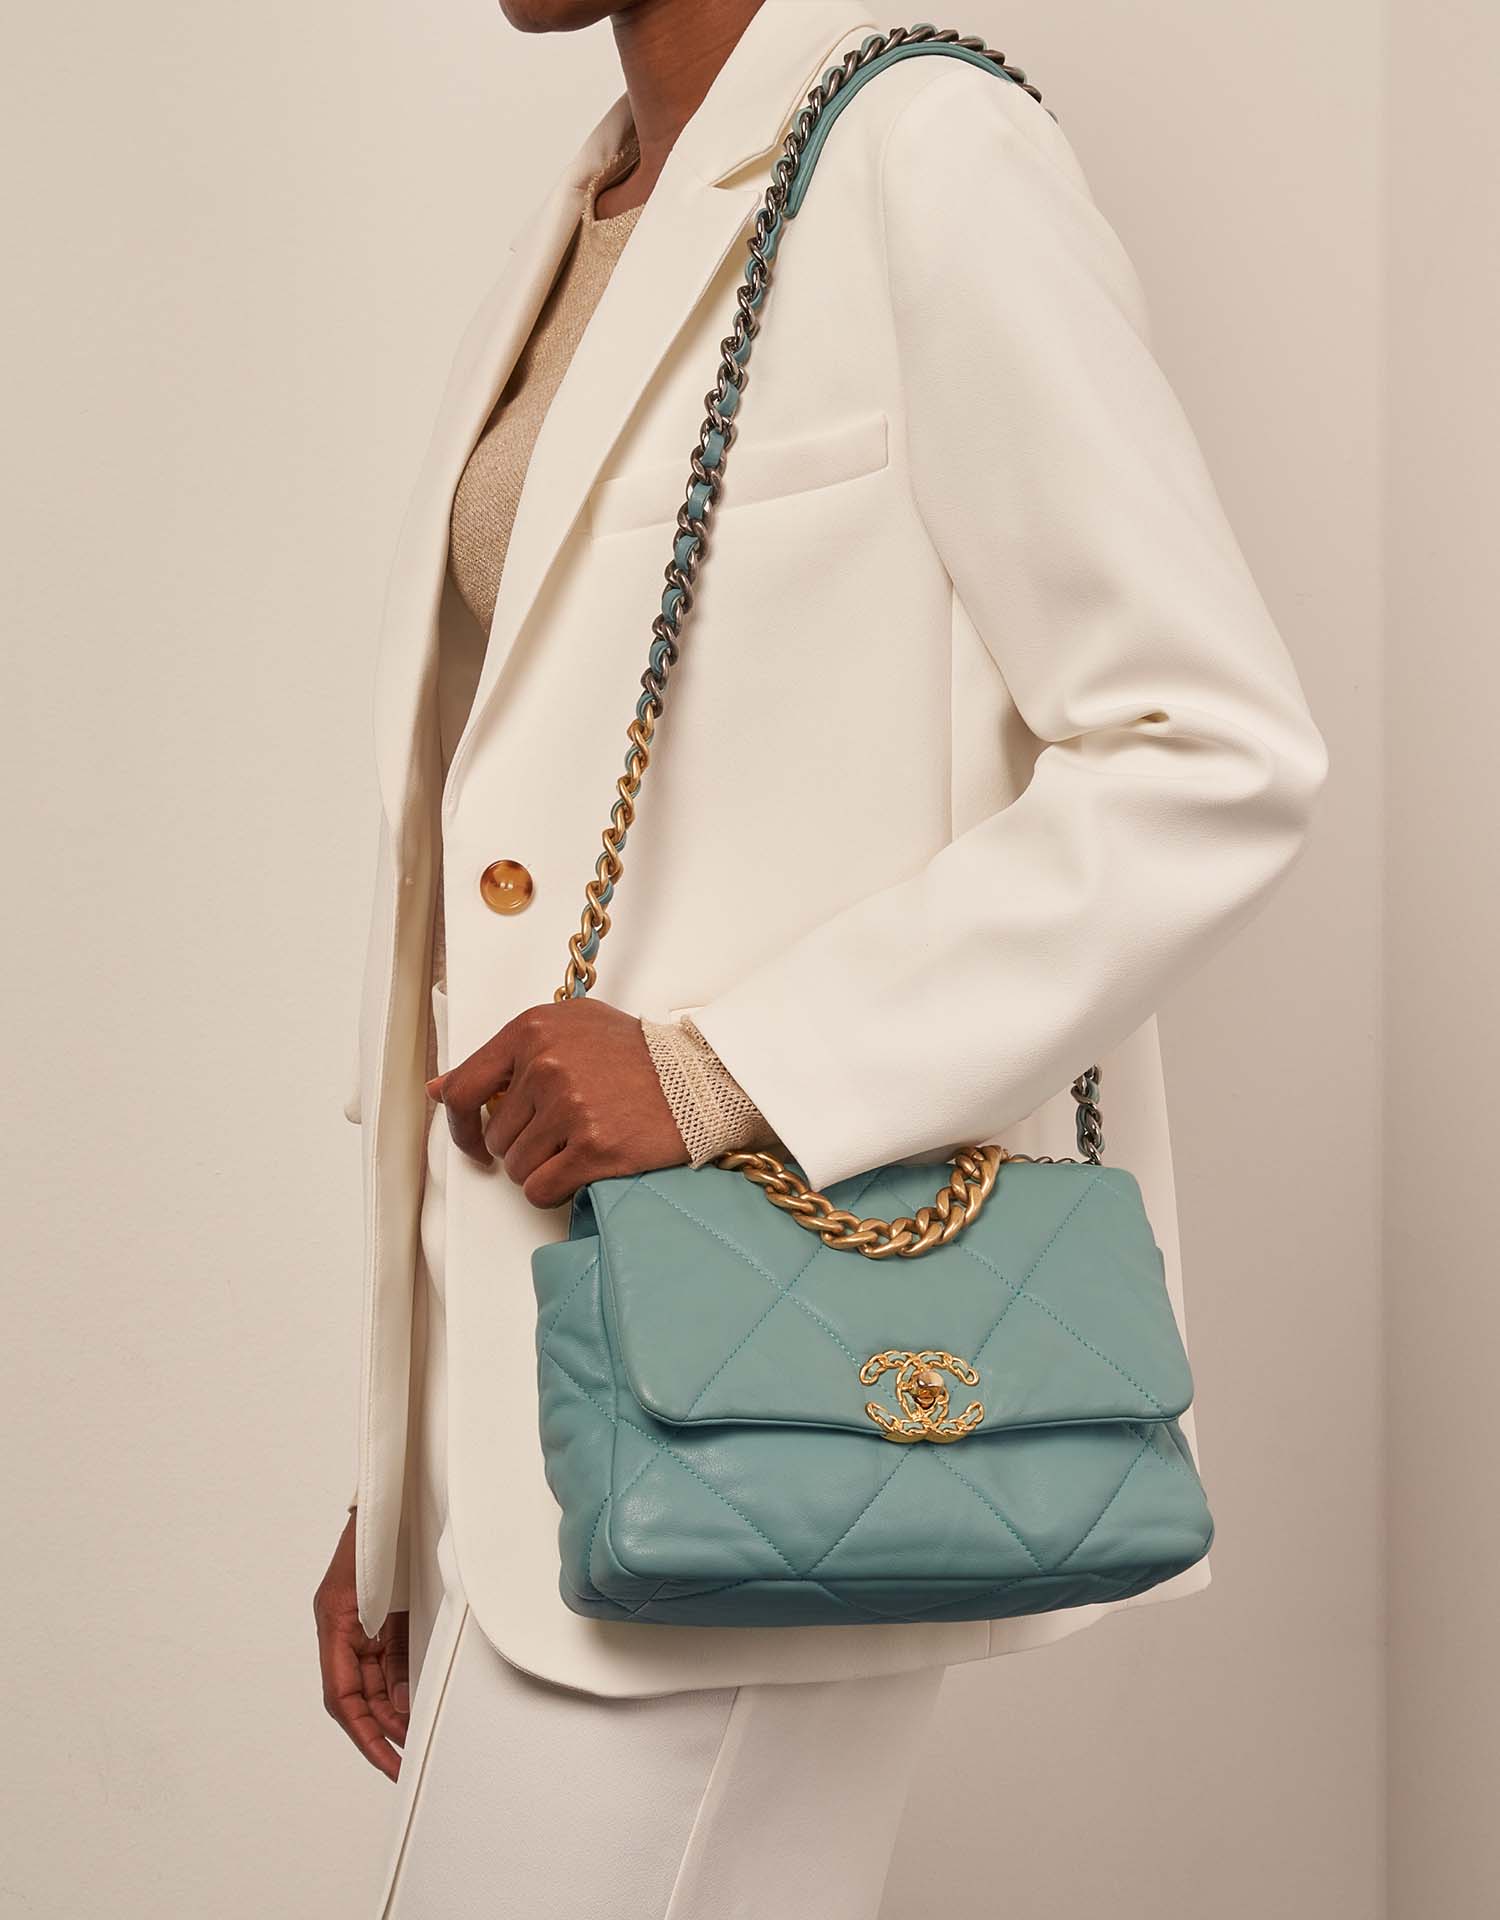 Chanel 19 LightGreen 1M | Verkaufen Sie Ihre Designertasche auf Saclab.com